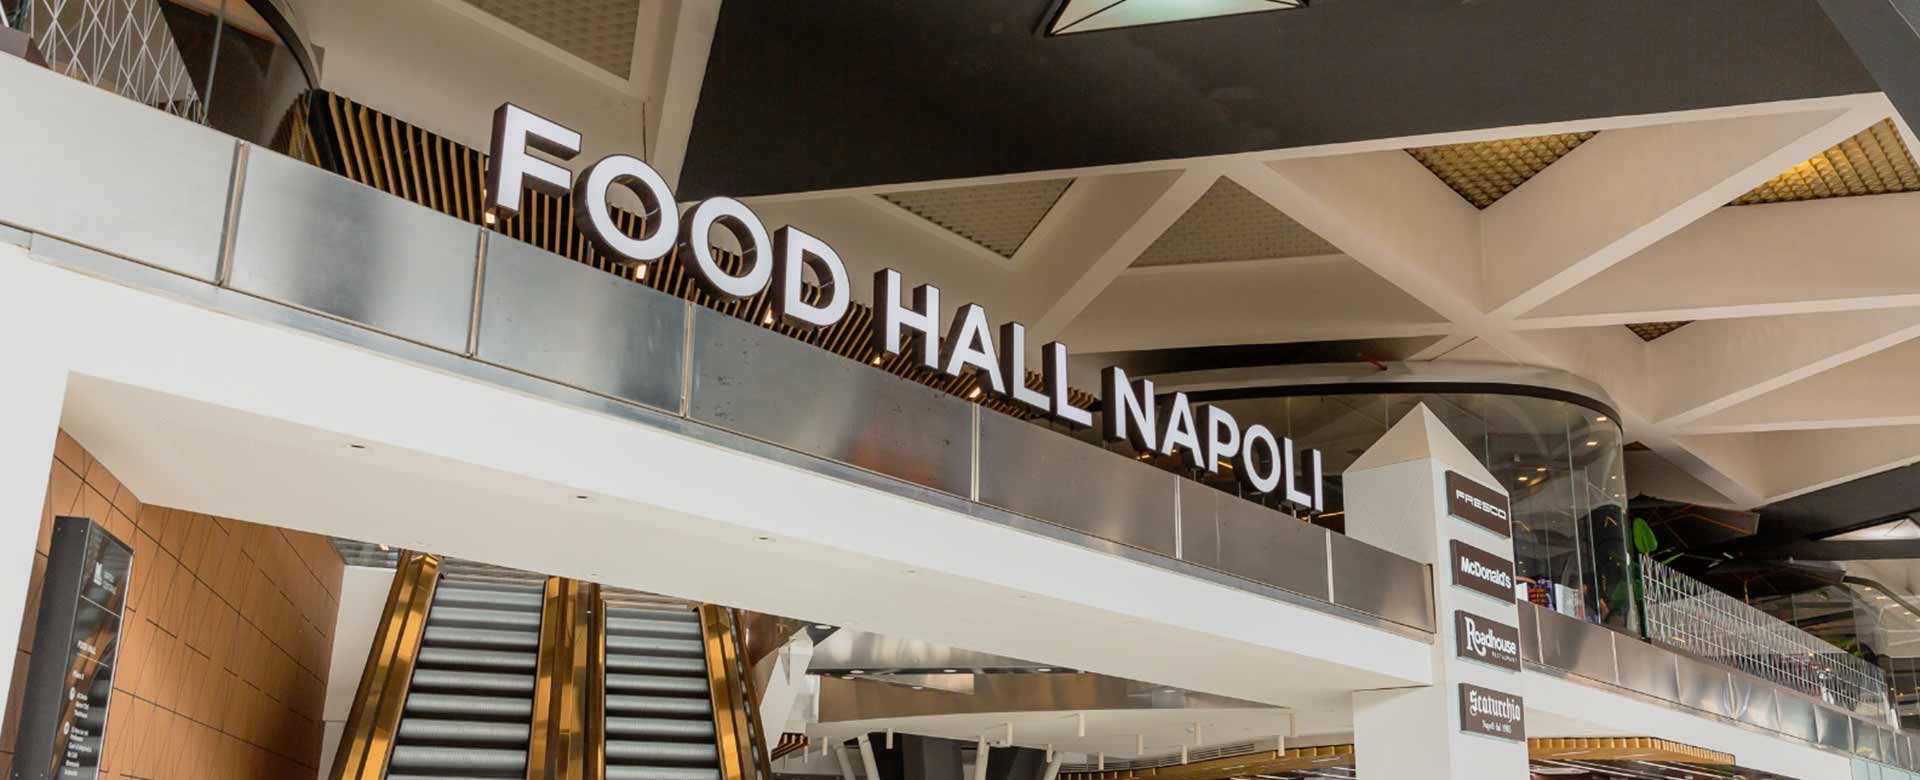 L’ingresso alla Food Hall della stazione di Napoli Centrale